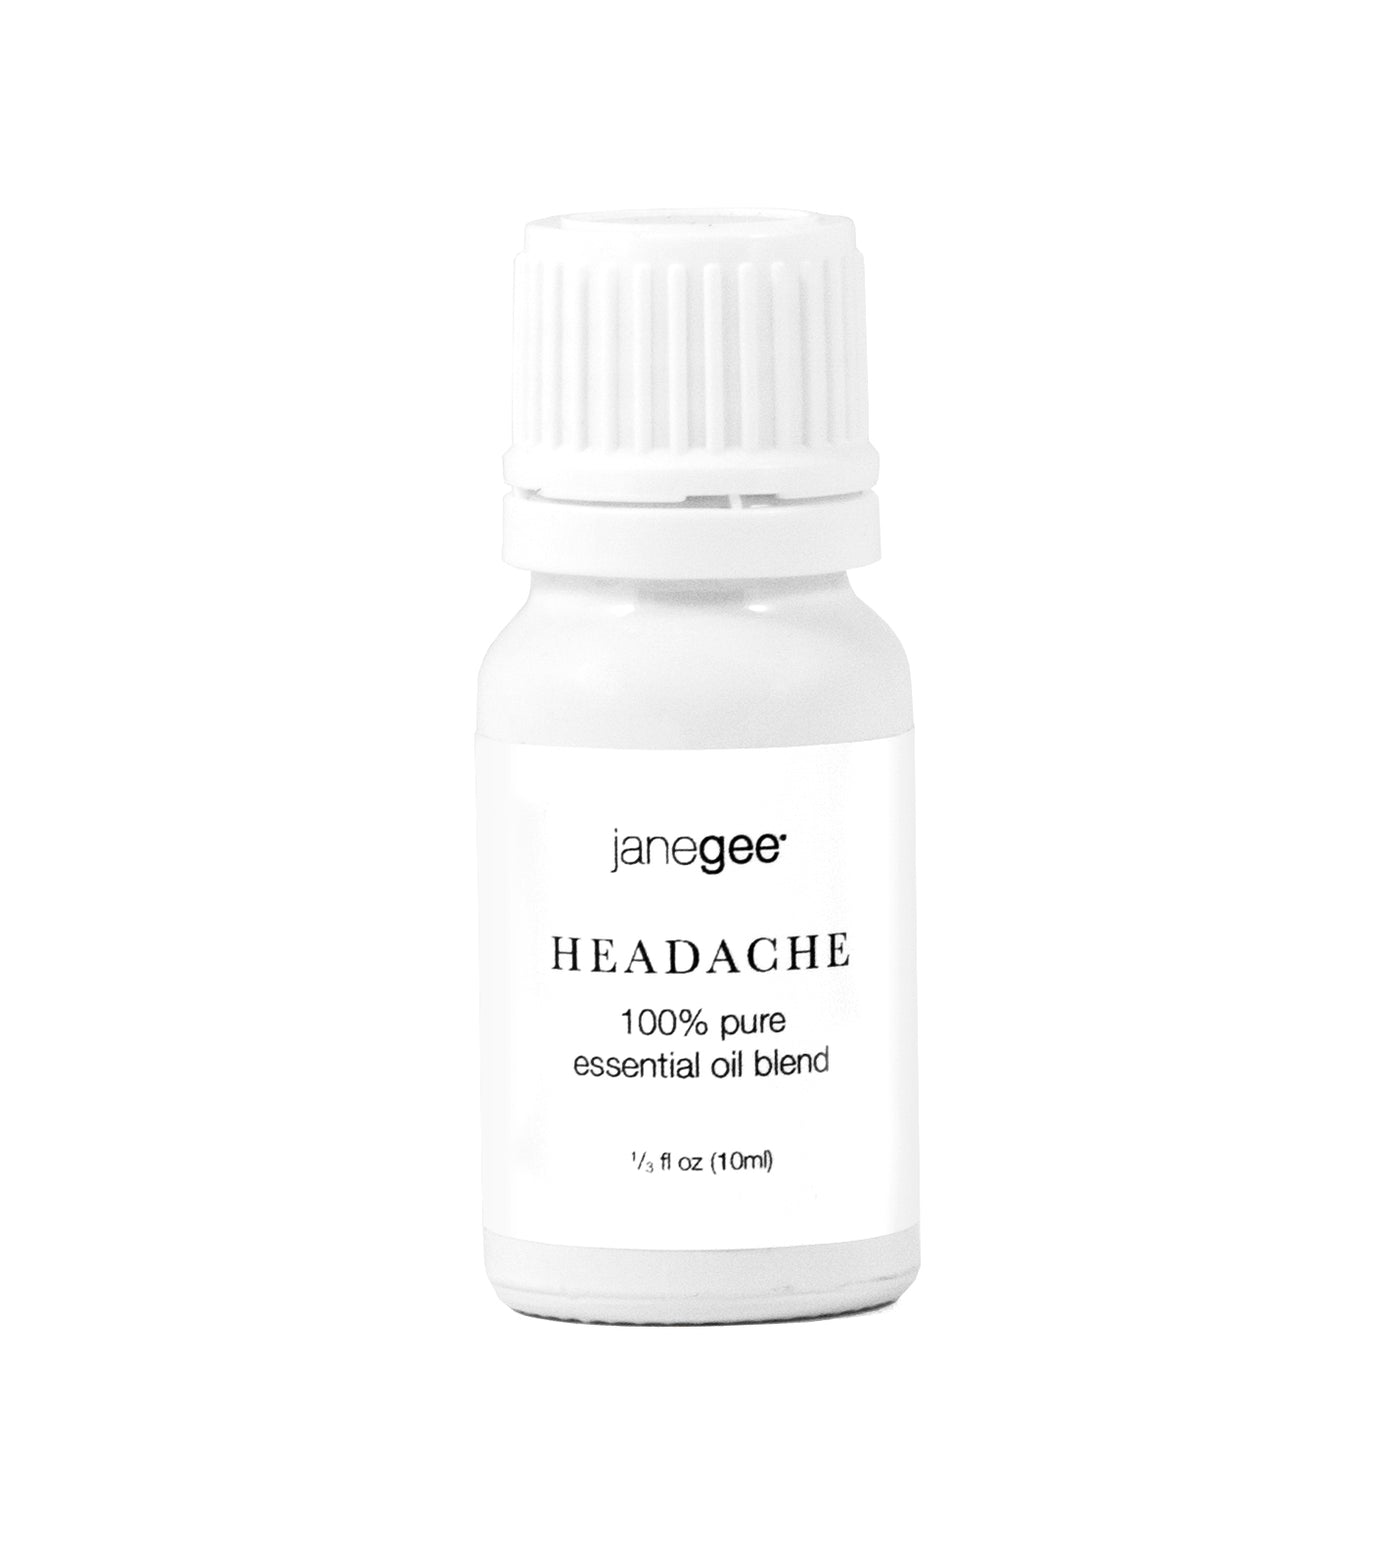 janegee Headache Essential Oil Blend